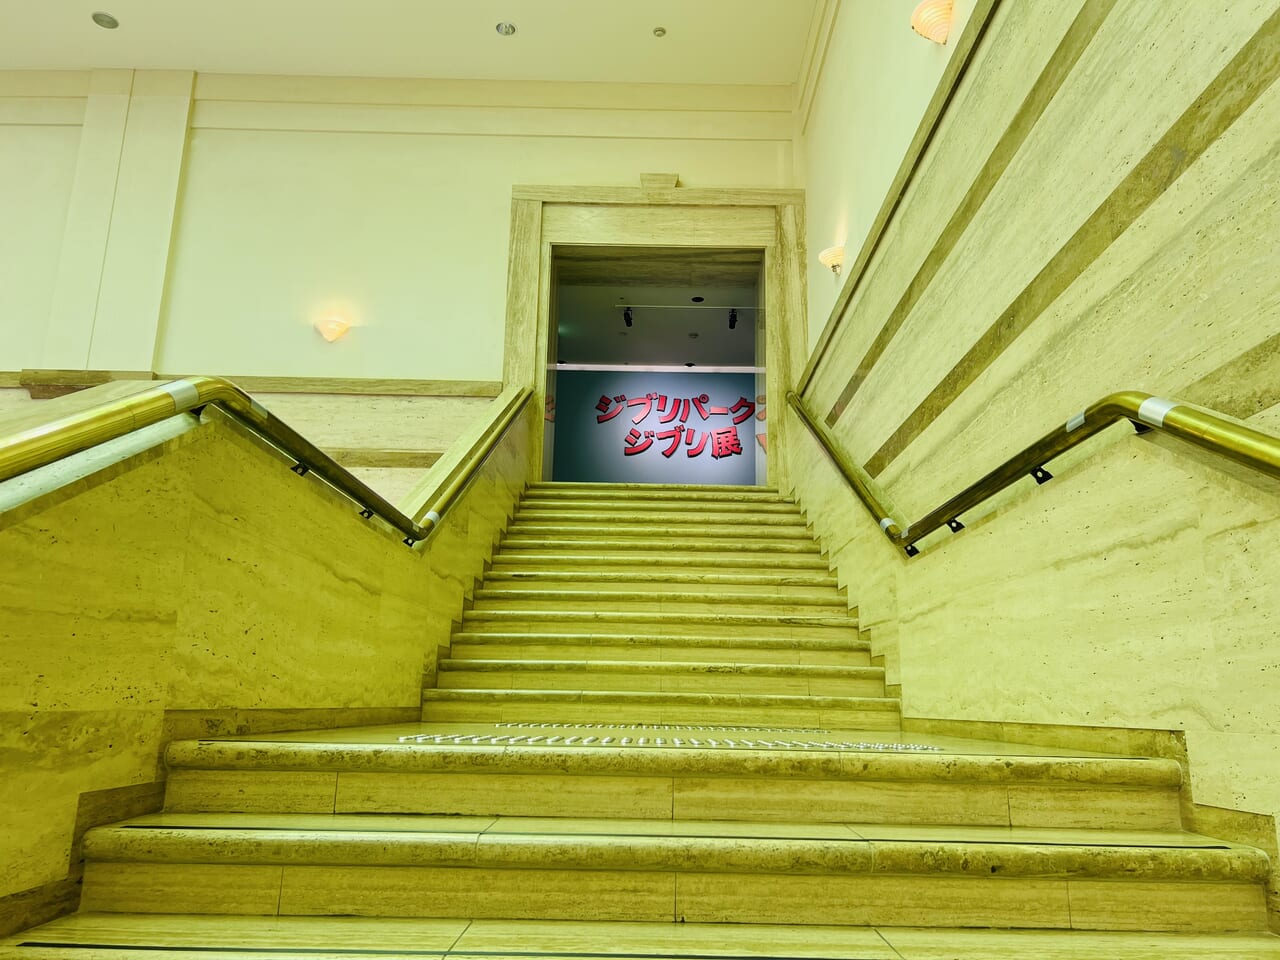 「ジブリパークとジブリ展」の入り口へ続く階段